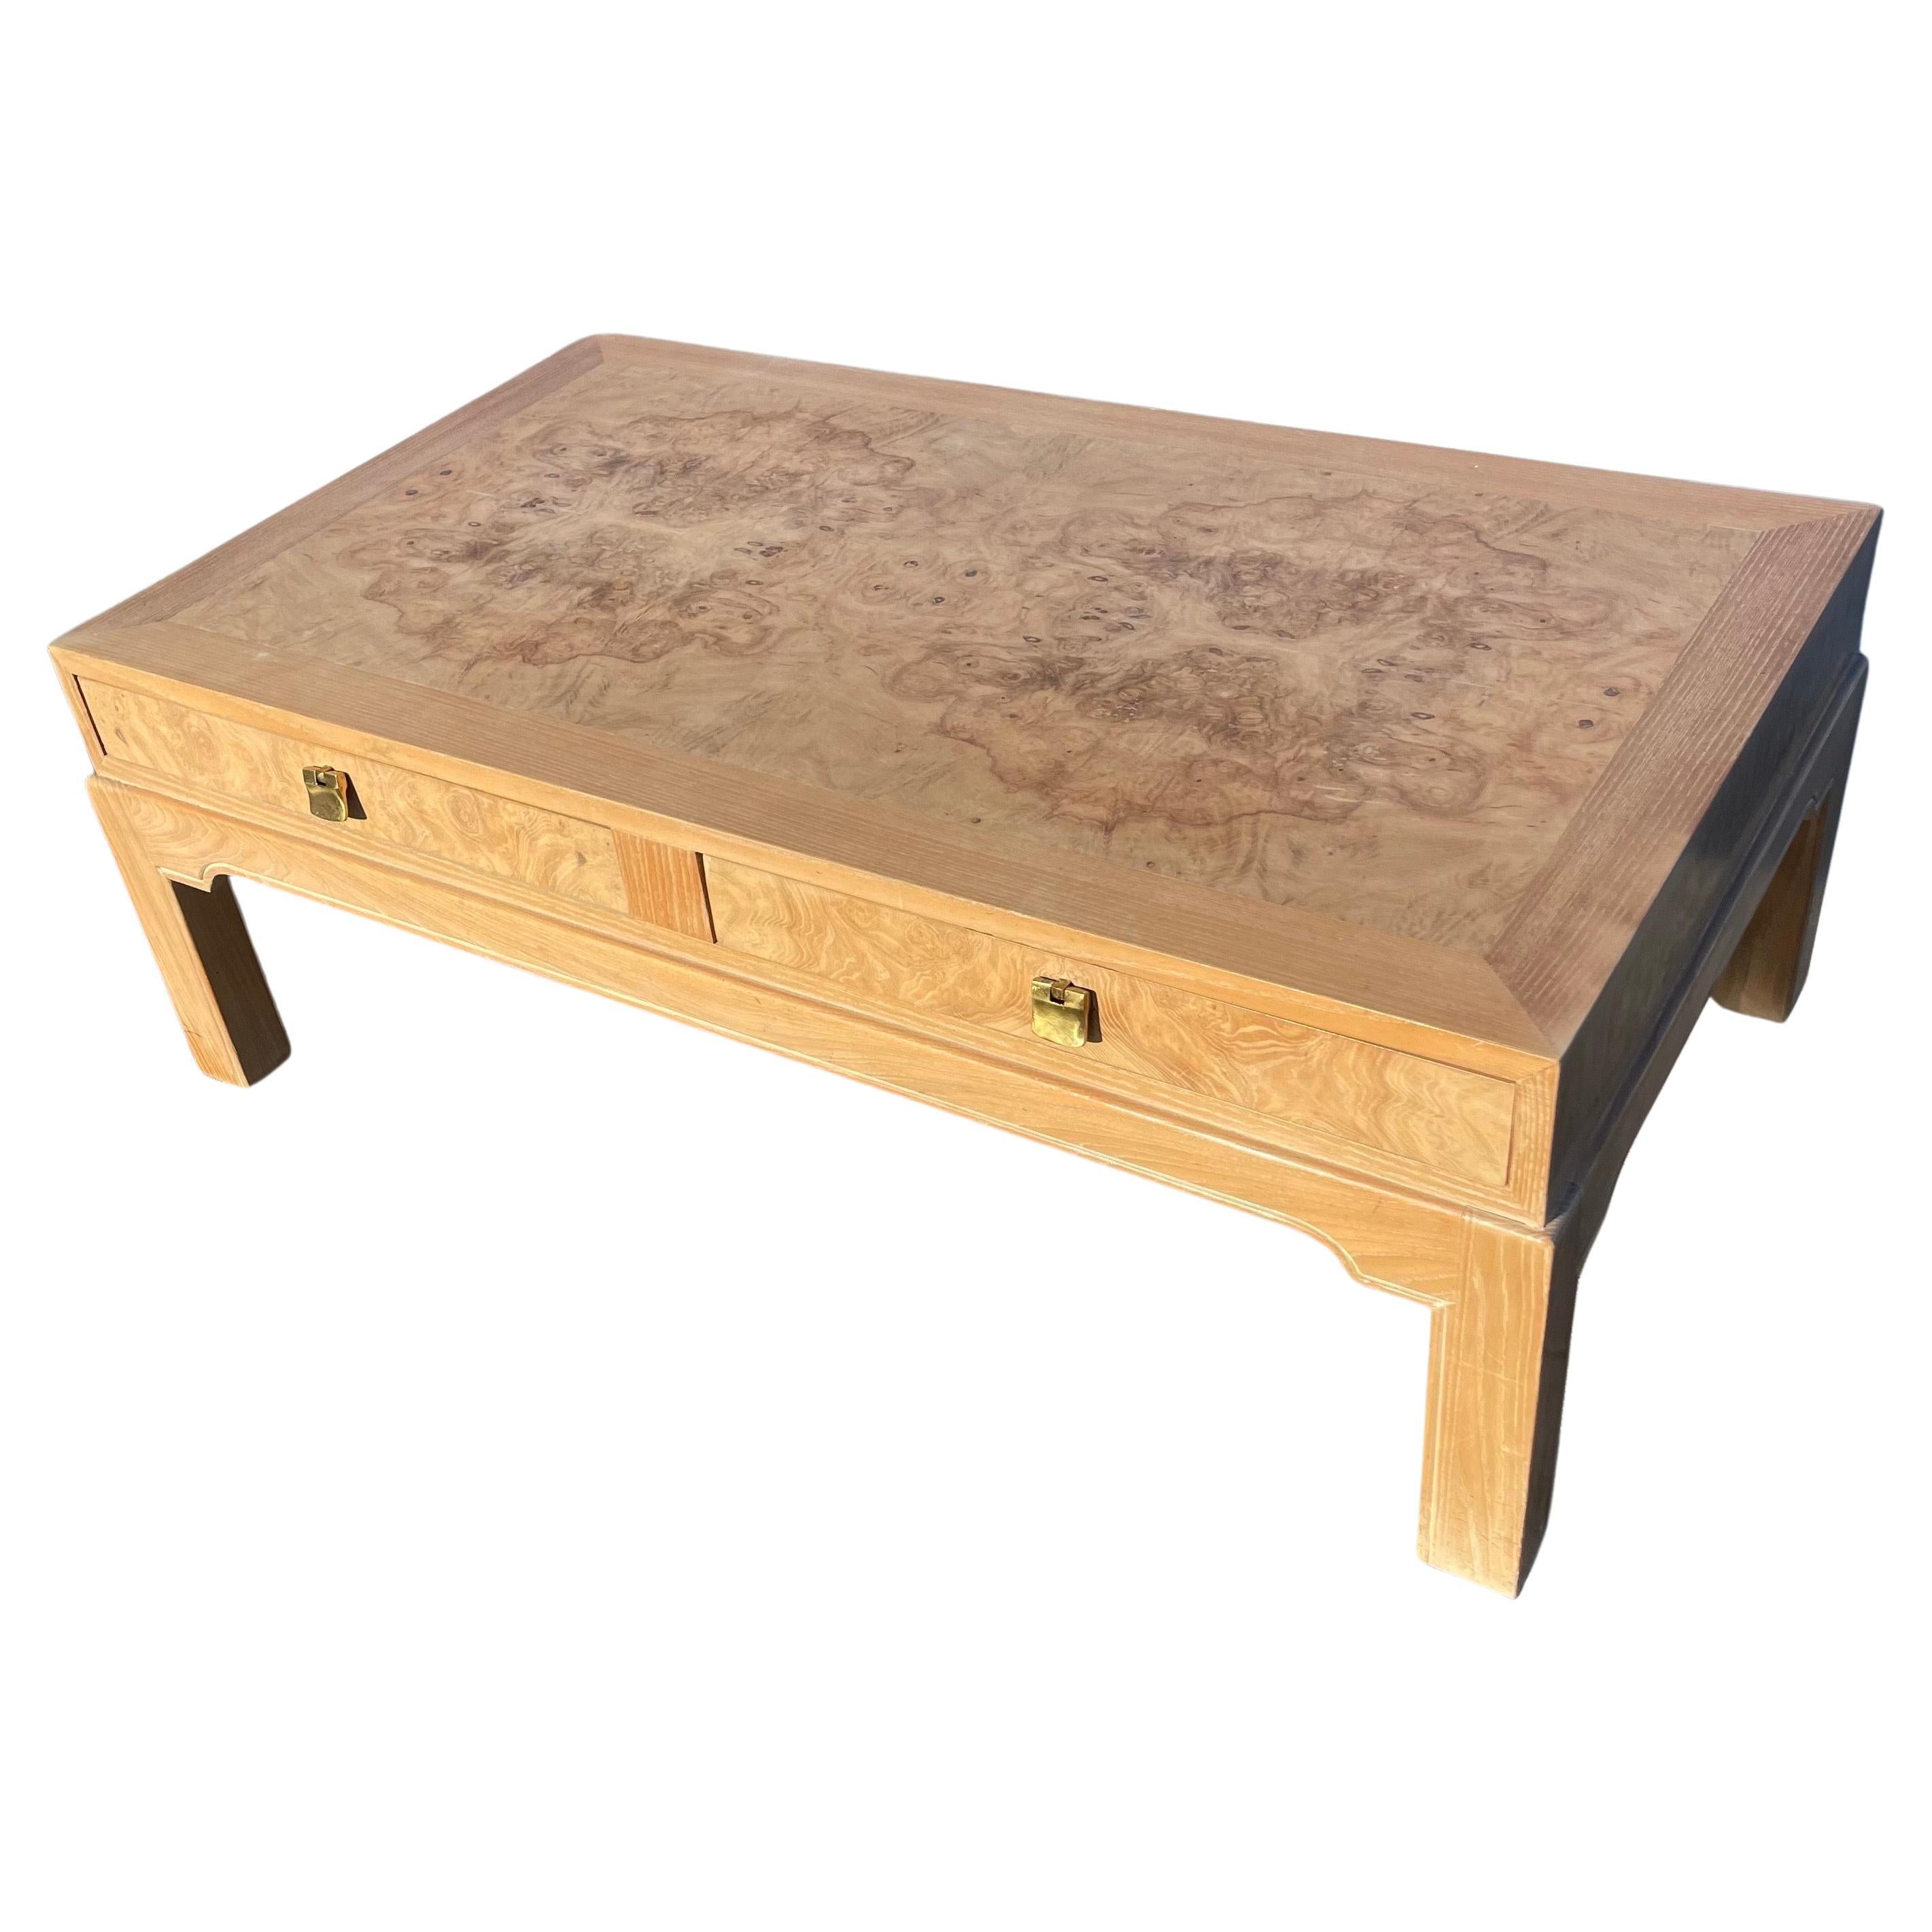 Table basse de la collection corinthienne Drexel Heritage en ronce de bois avec tiroirs